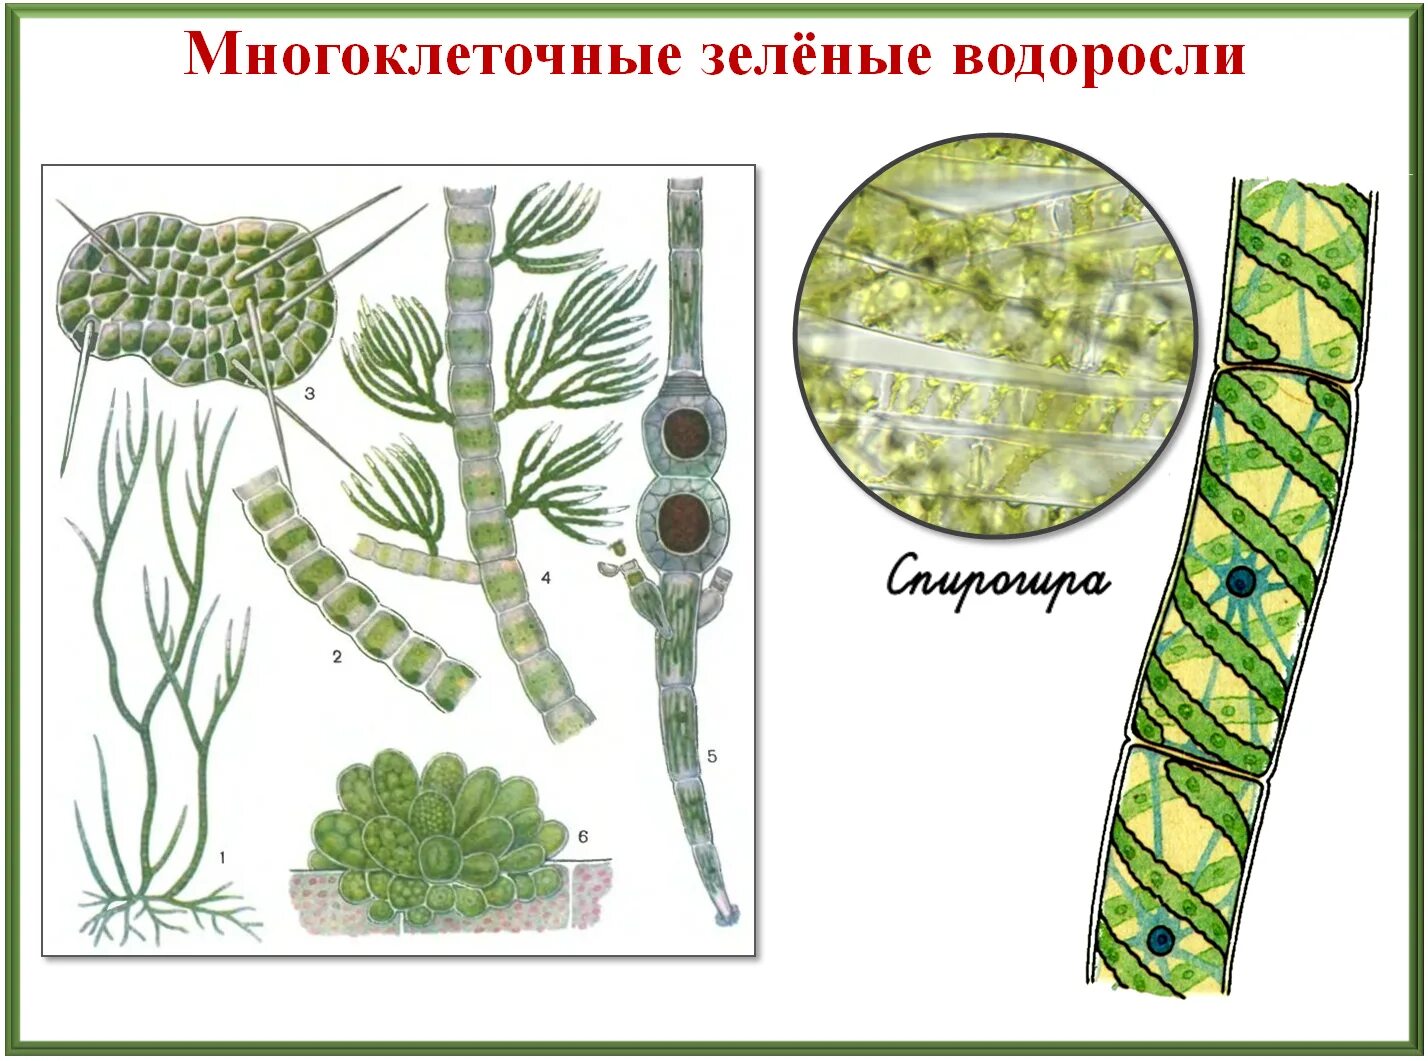 4 класса водорослей. Строение водорослей. Многоклеточные зеленые водоросли. Разнообразие зеленых водорослей. Многообразие и размножение водорослей.